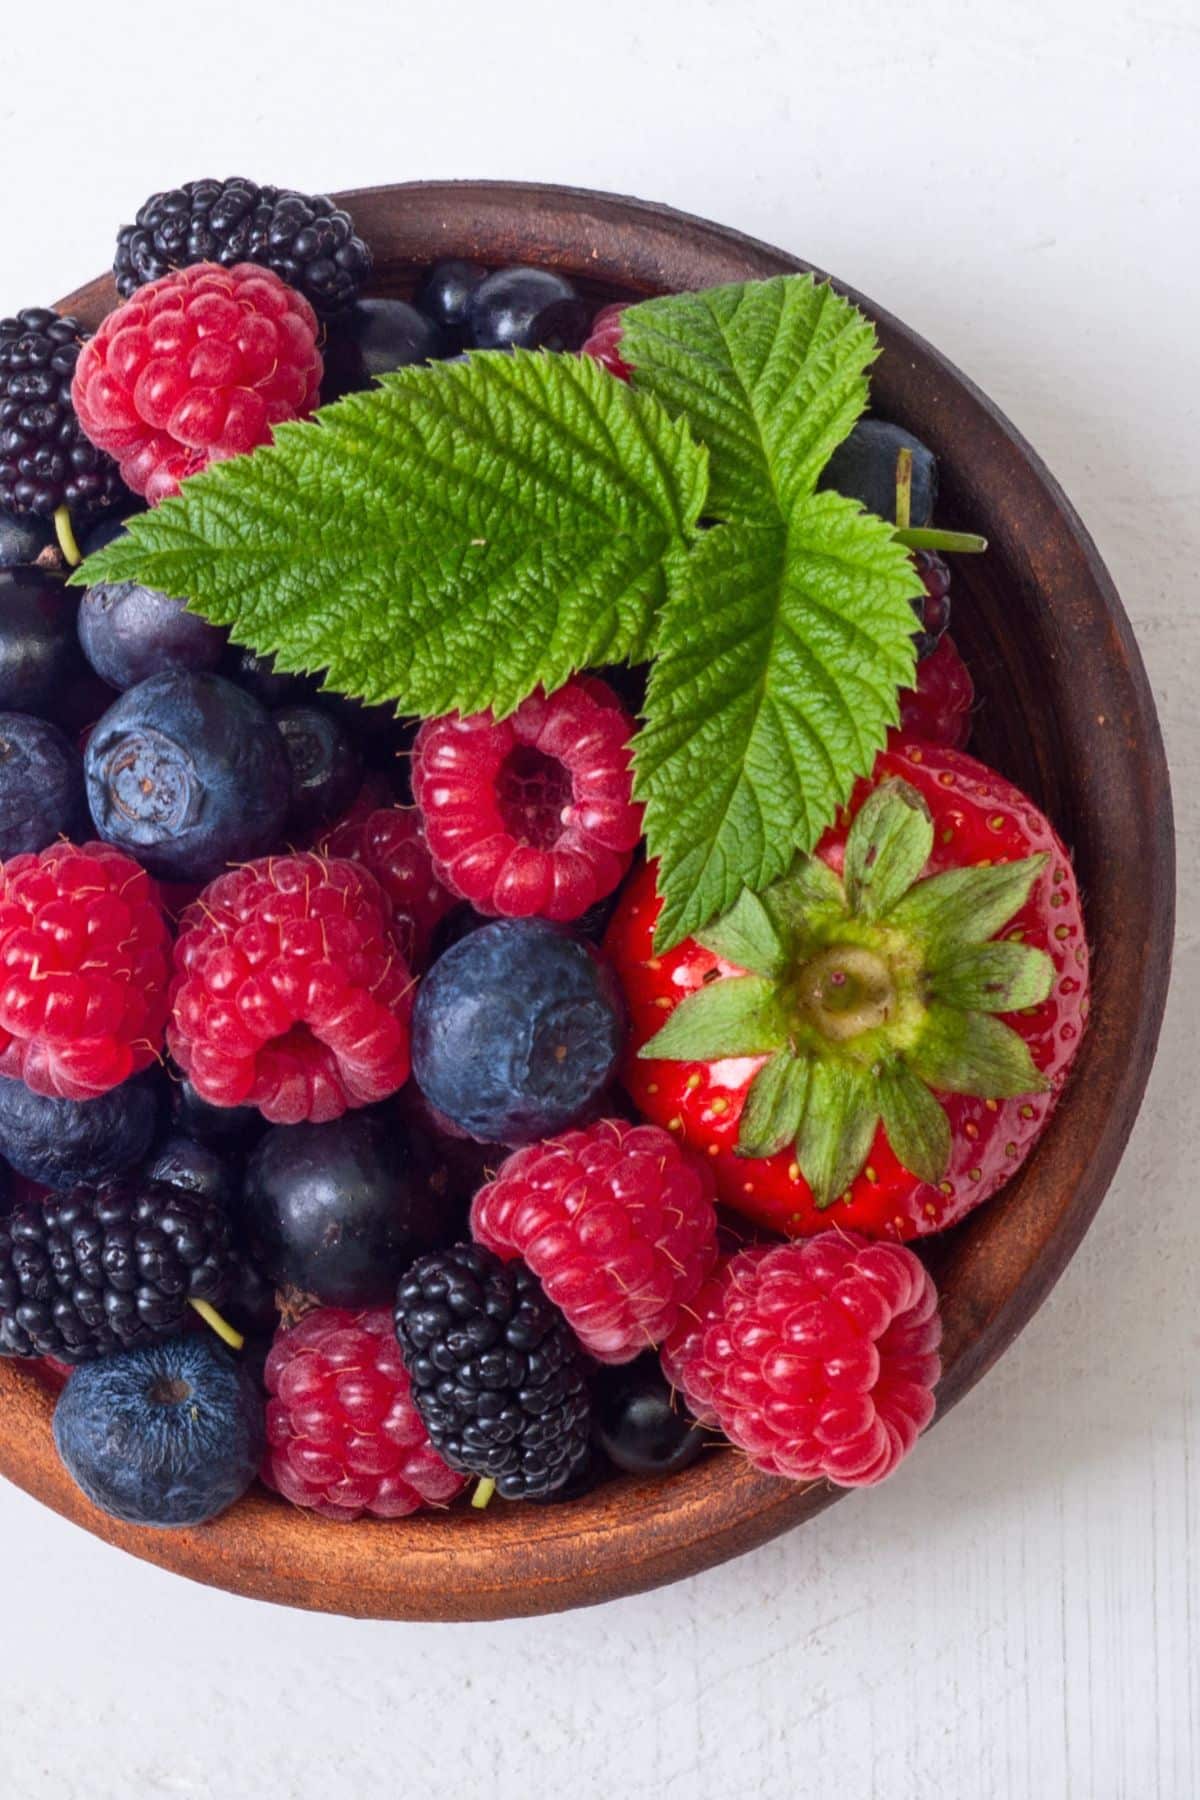 a bowl of blueberries, strawberries, raspberries, and blackberries.